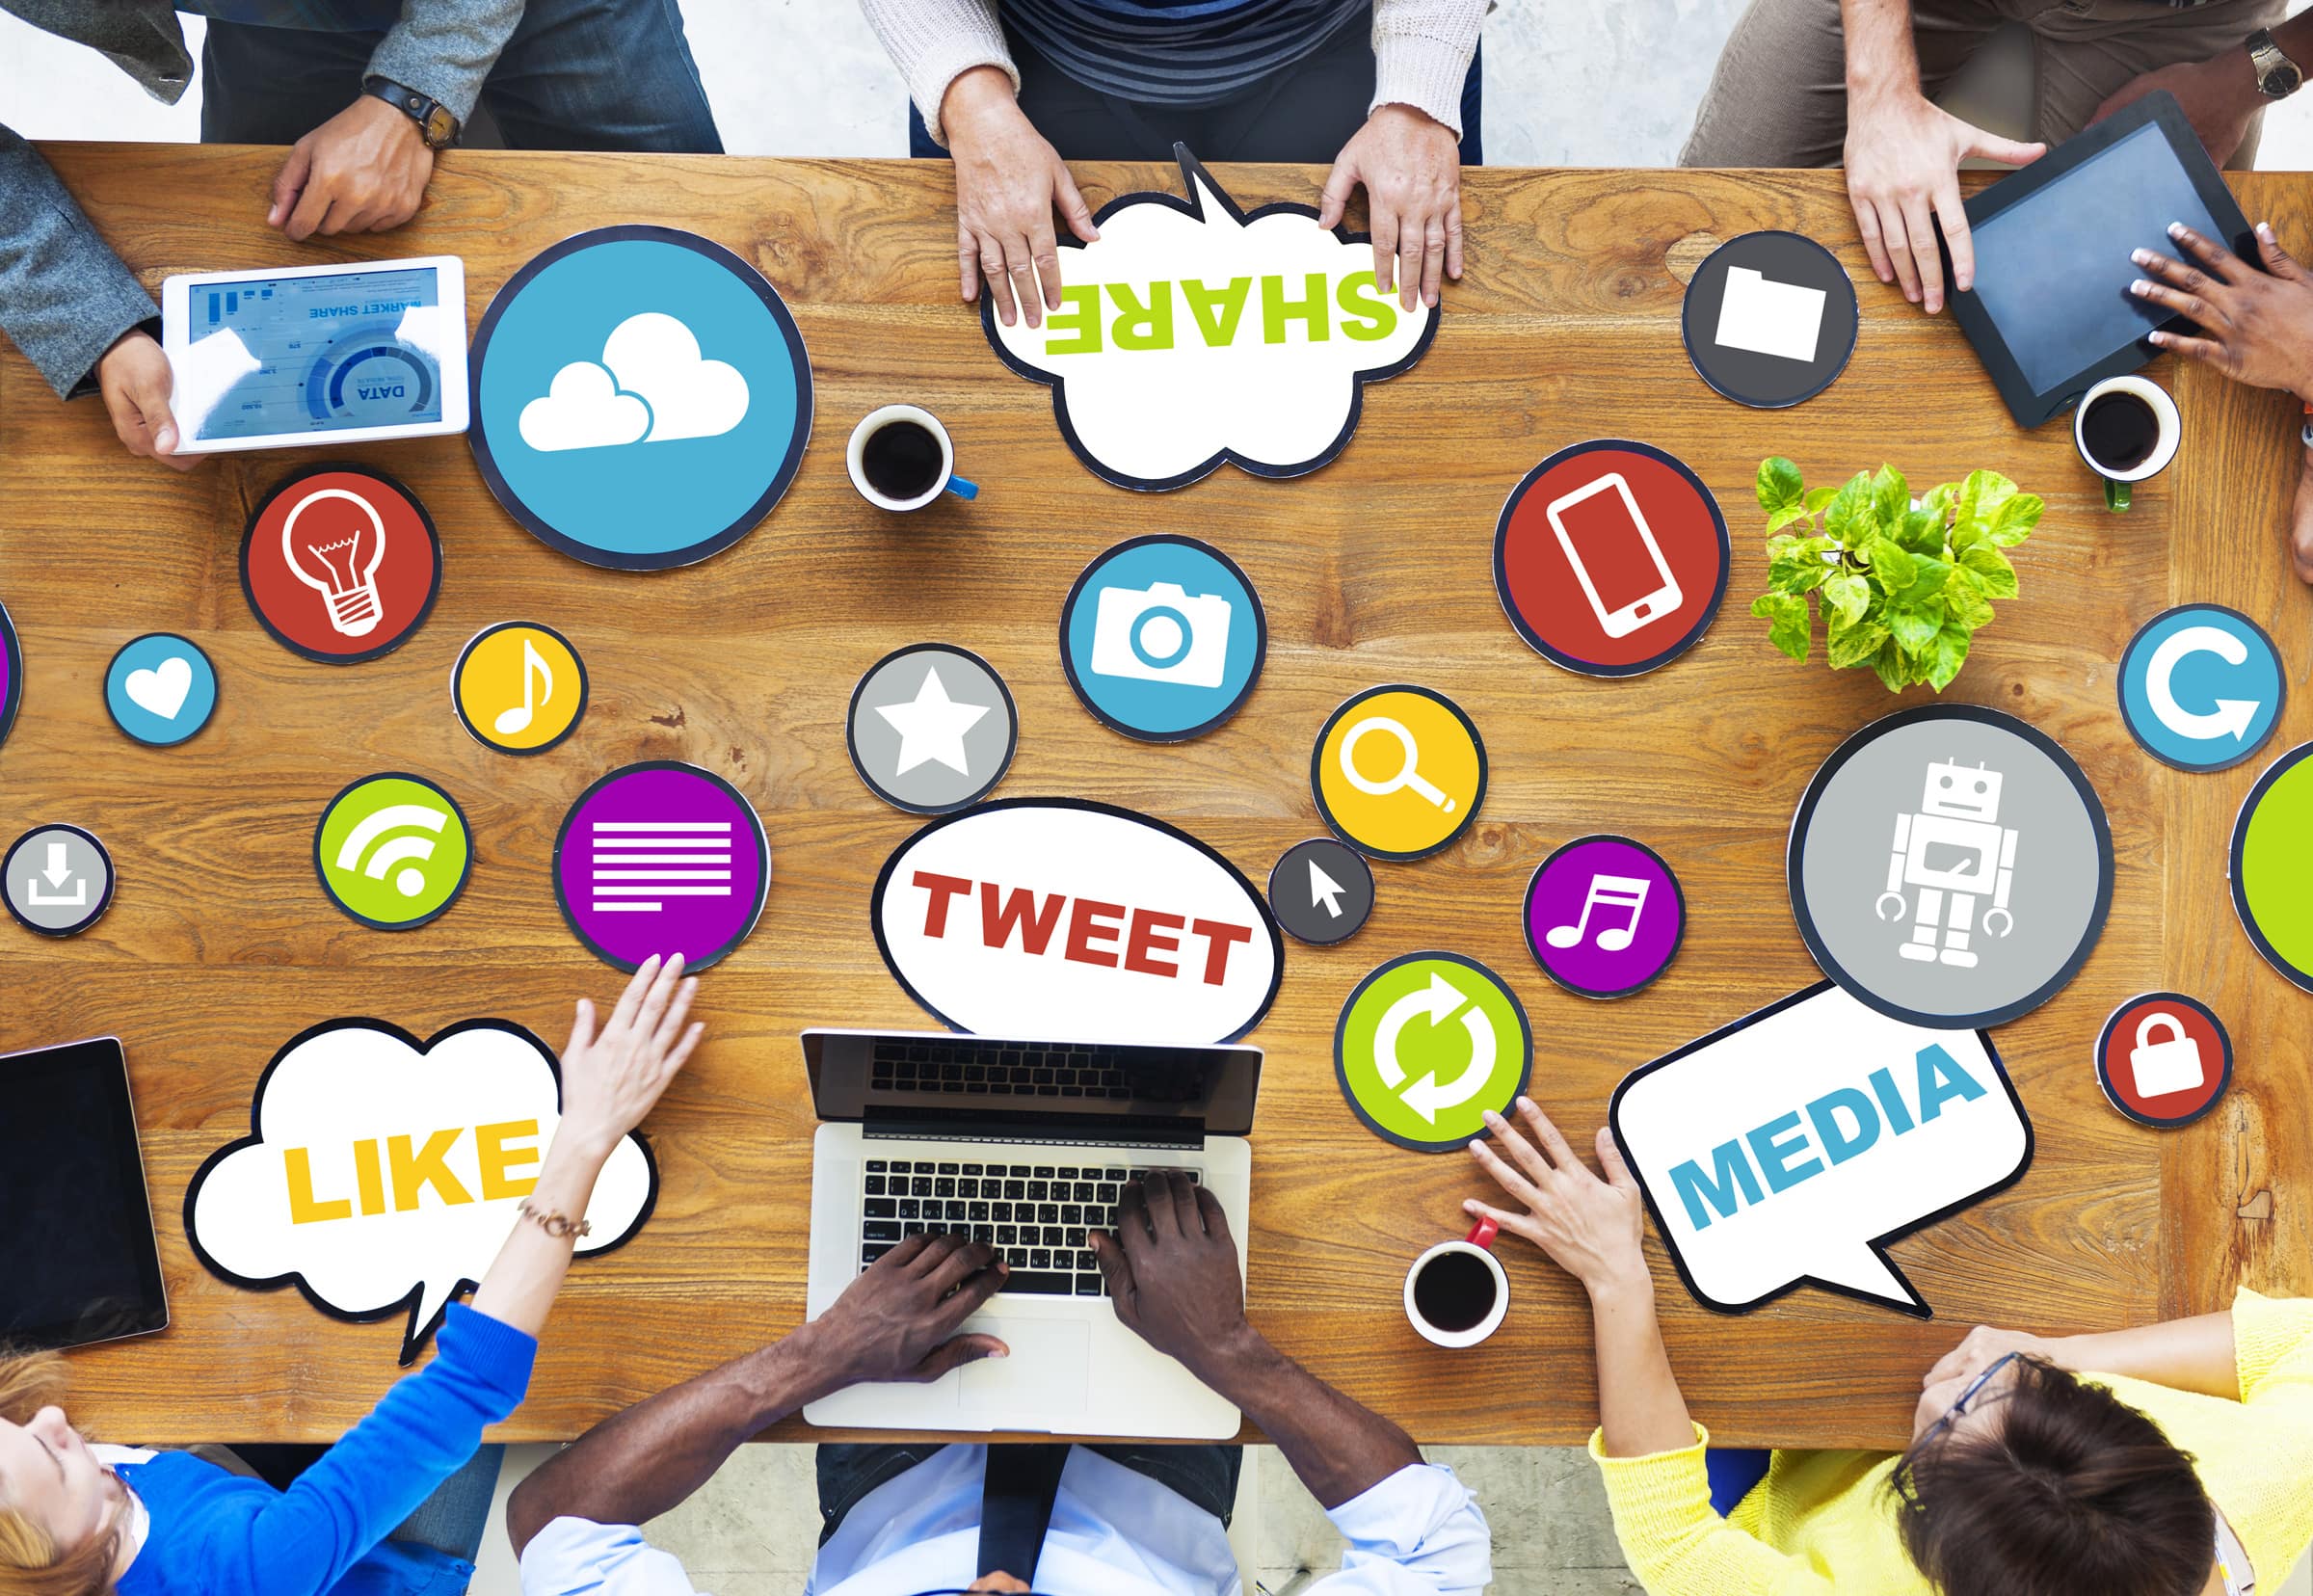 5 Social Media Marketing Tips